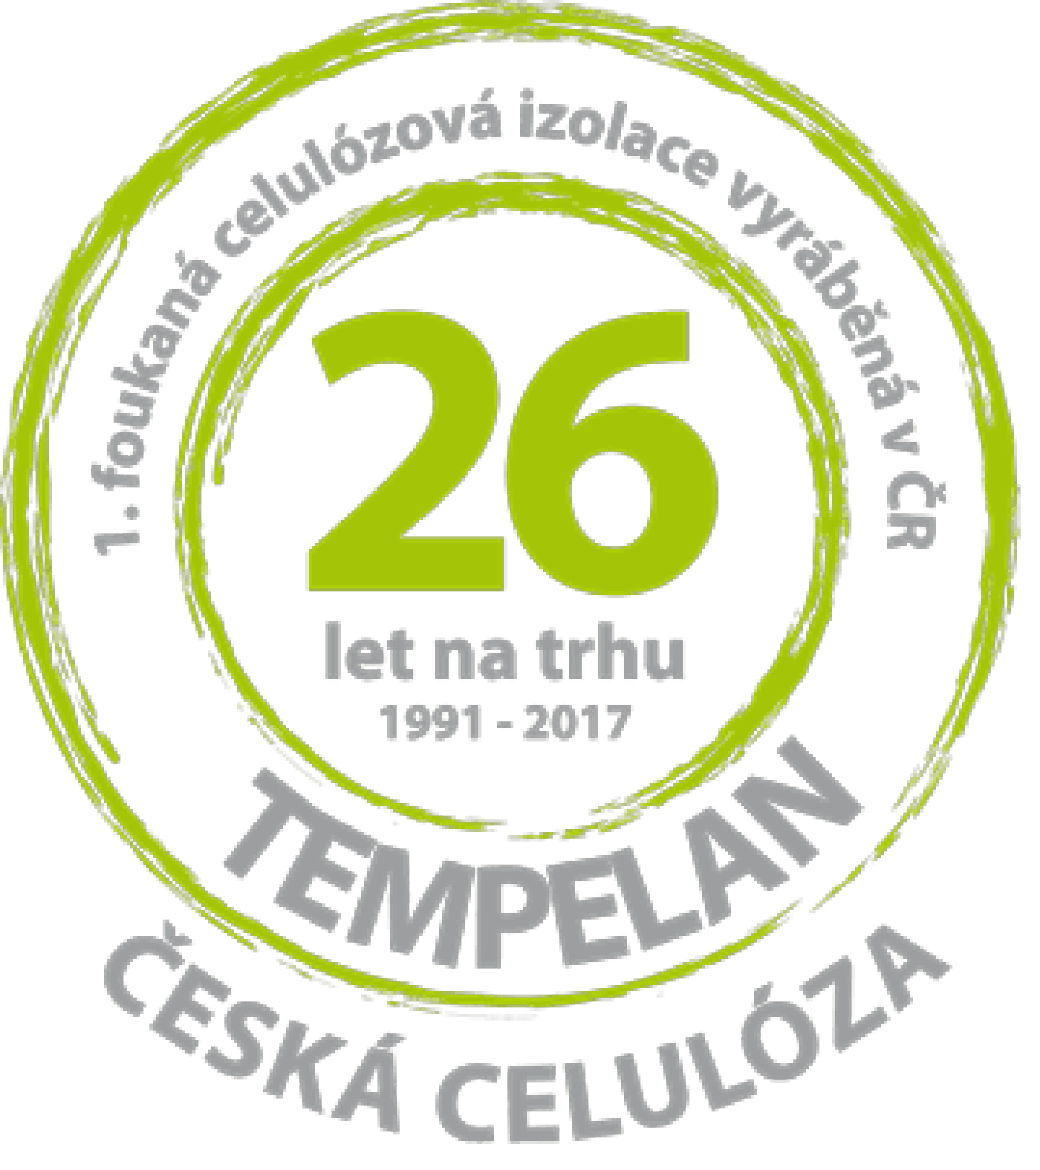 Tempelan Česká celuloza